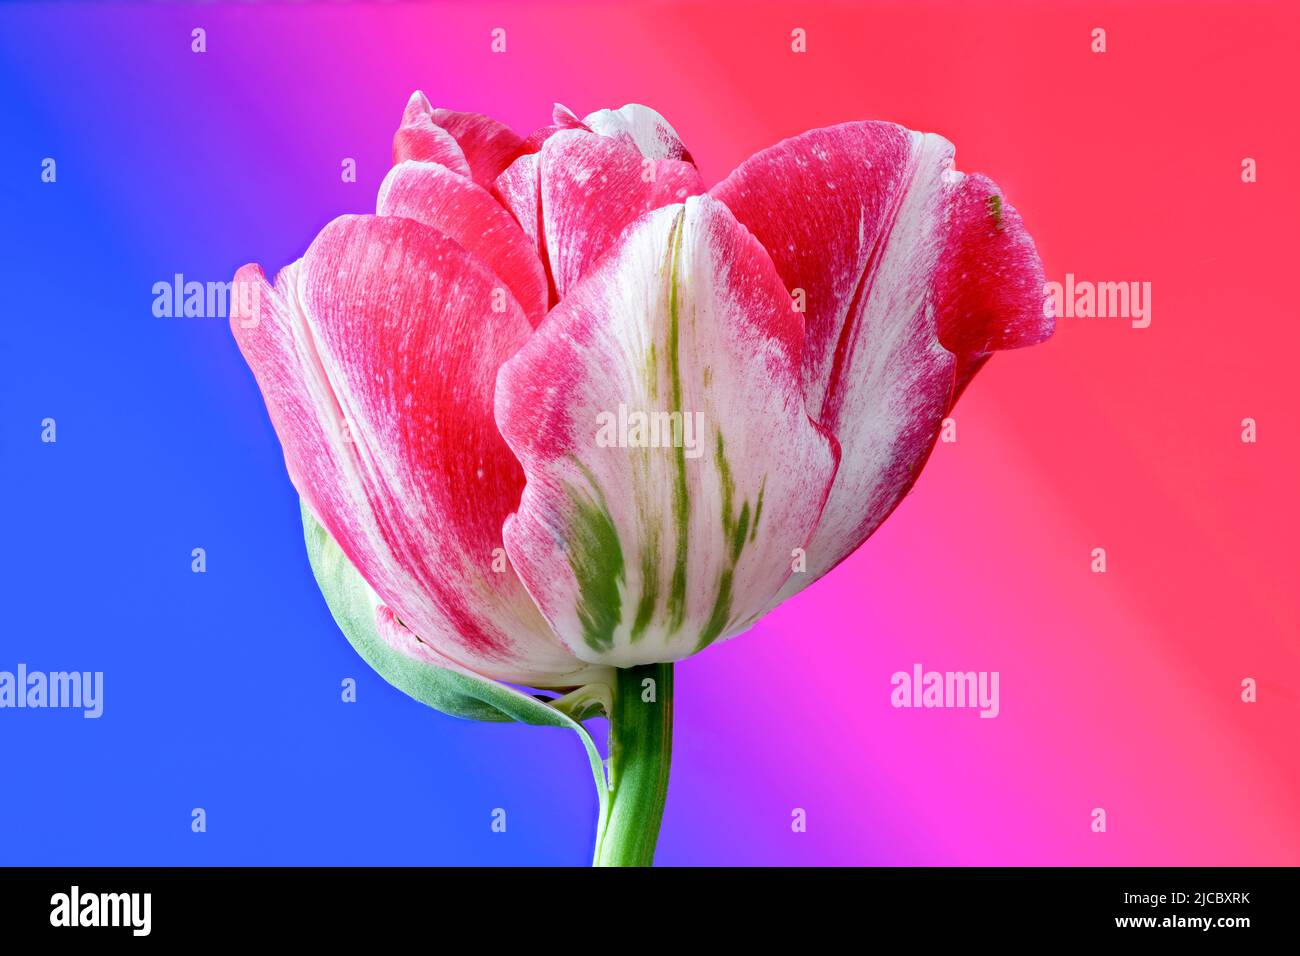 Eine wunderschöne pinkfarbene und weiße Tulpenblume, fotografiert vor einem leuchtend pinkfarbenen und blauen Hintergrund Stockfoto